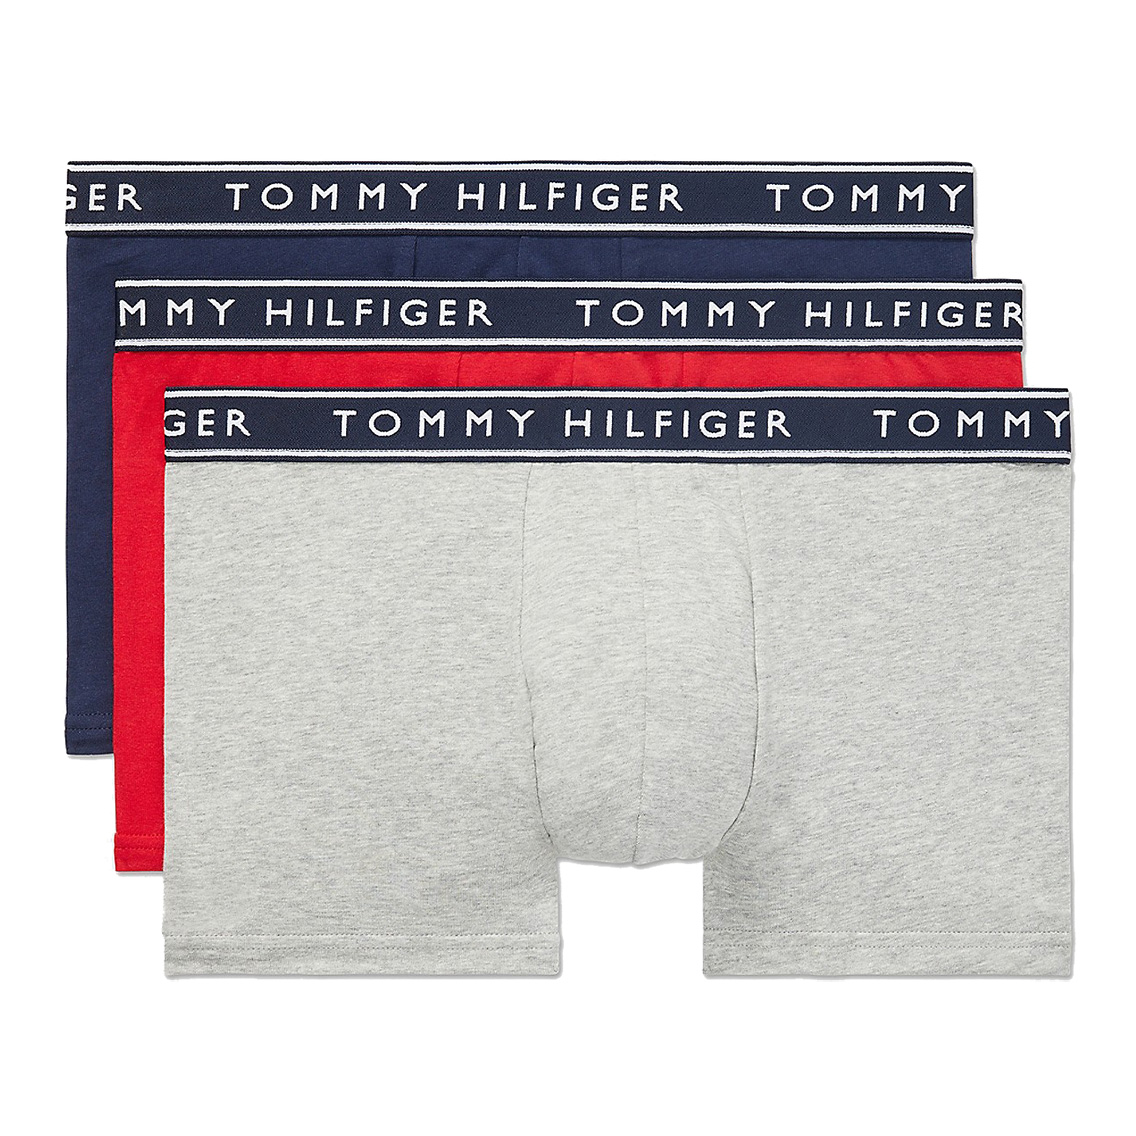 [09T4225-608] TOMMY HILFIGER トミーヒルフィガー ボクサーパンツ メンズ アンダーウェア インナー 男性 下着 ブランド おすすめ 人気